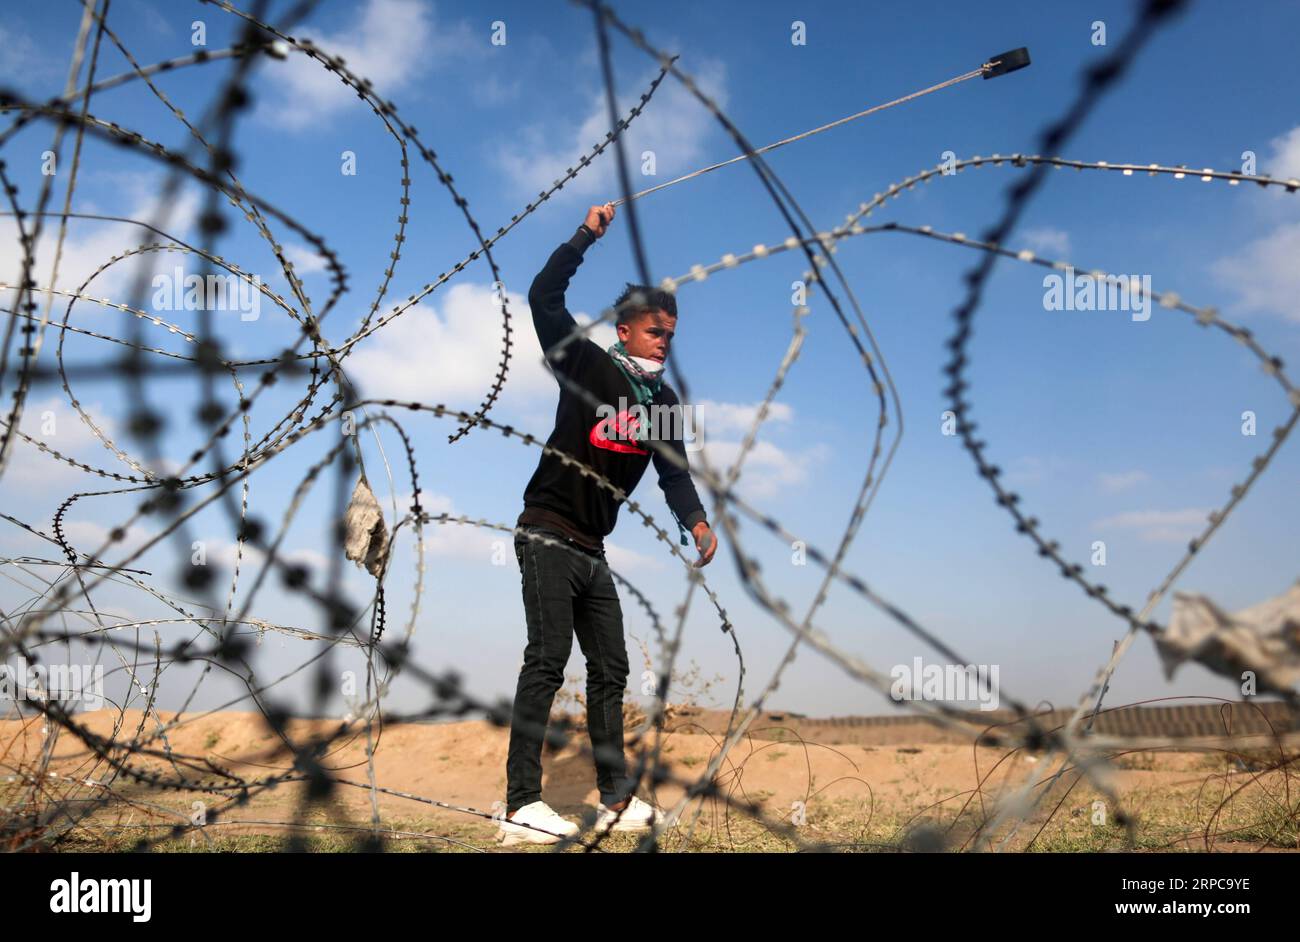 (1906289) - PECHINO, 29 giugno 2019 - Un manifestante palestinese usa una fionda per lanciare pietre contro le truppe israeliane durante gli scontri sul confine tra Gaza e Israele, a est del campo profughi di al-Bureij nella Striscia di Gaza centrale, 28 giugno 2019. Almeno 50 palestinesi sono rimasti feriti venerdì negli scontri tra dozzine di manifestanti e soldati israeliani di stanza al confine tra la Striscia di Gaza orientale e Israele. ) XINHUA FOTO DEL GIORNO YasserxQudih PUBLICATIONxNOTxINxCHN Foto Stock